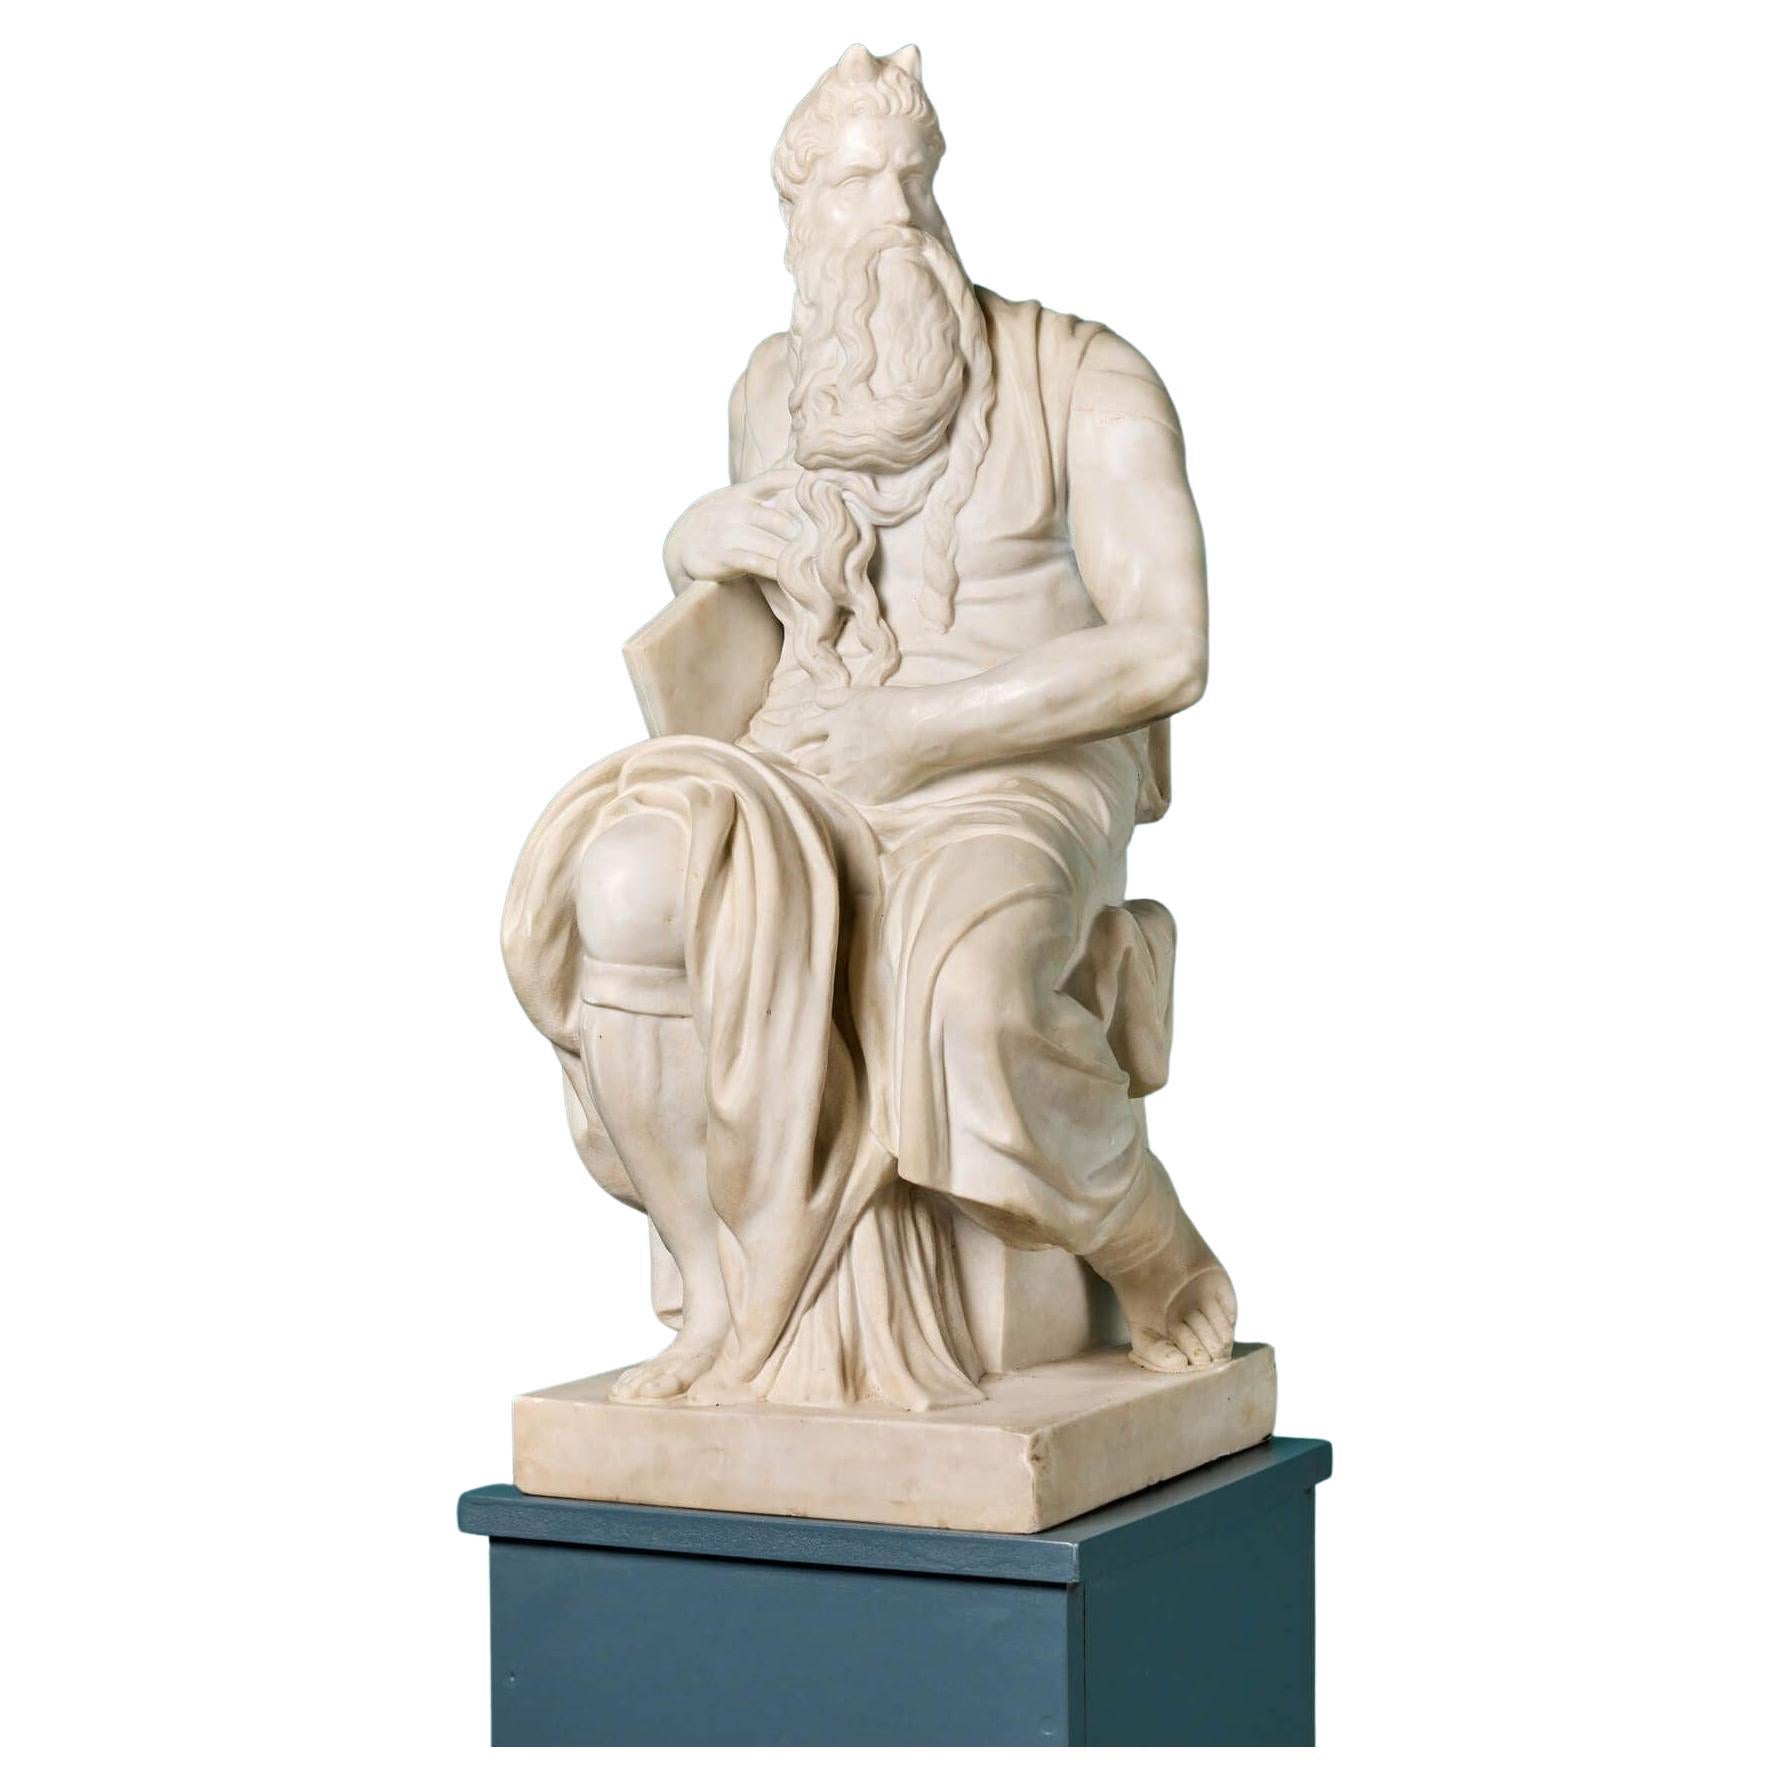 D'après la sculpture de Moïse en marbre statuaire blanc de Michel-Ange